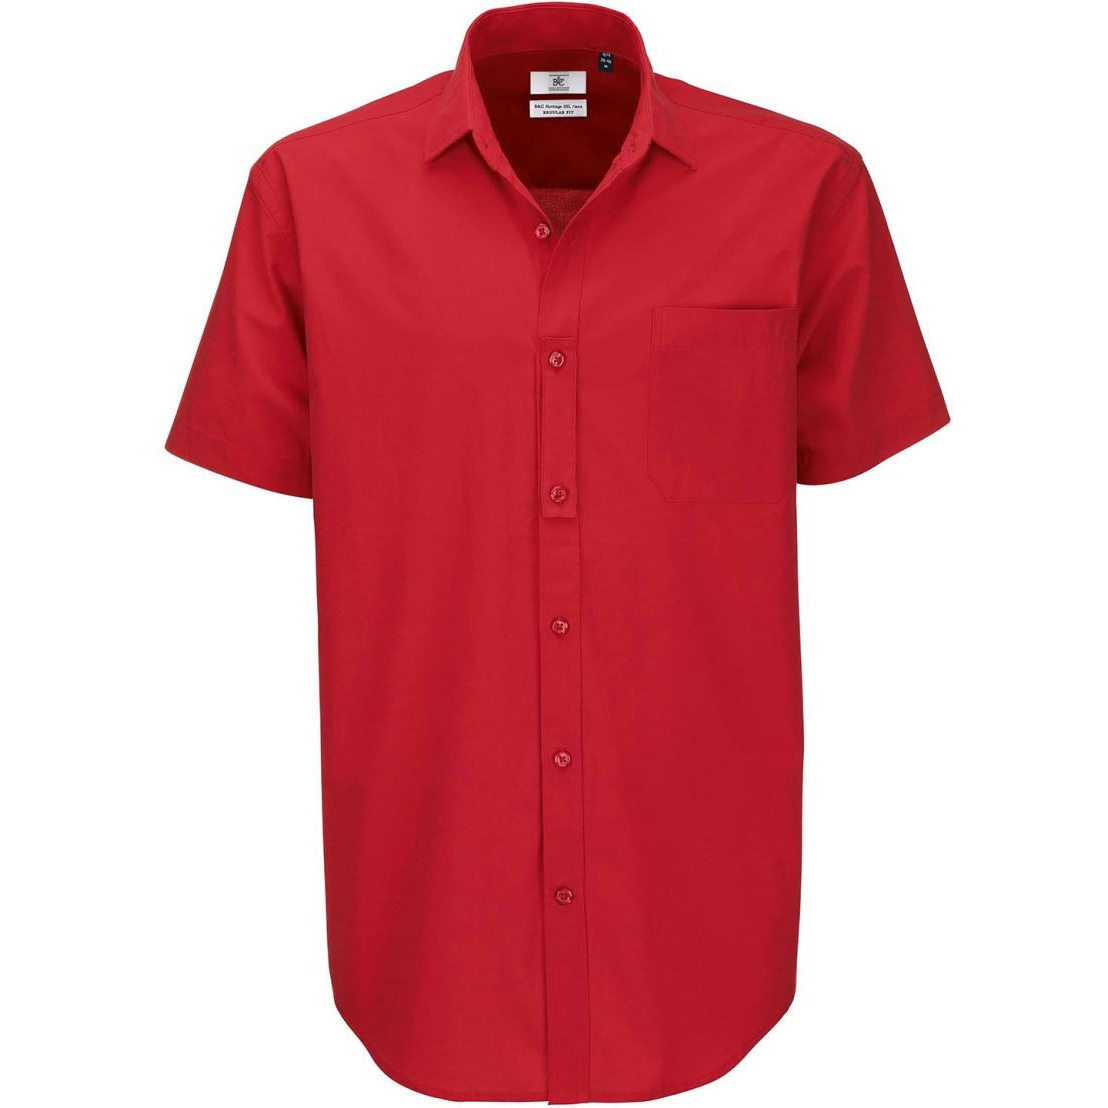 Pánská popelínová košile B&C Heritage s krátkým rukávem - červená, L